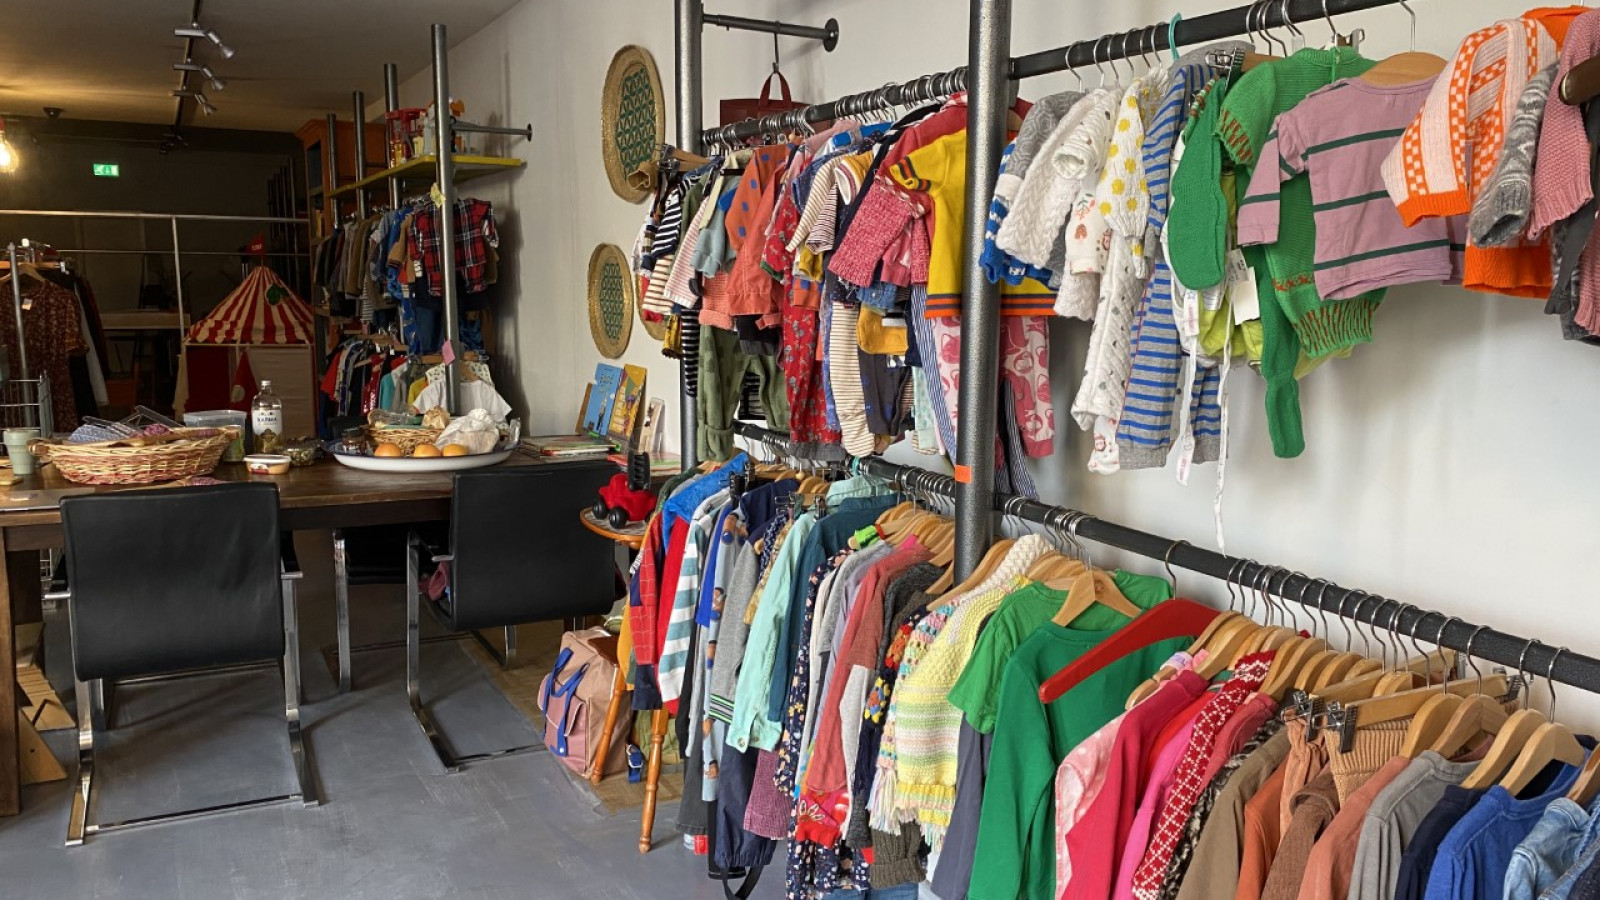 Eik schieten aansporing Do en Nadine openen tweedehands kinderwinkel in Zaandam: "Duurste  kledingstuk is 25 euro" - NH Nieuws